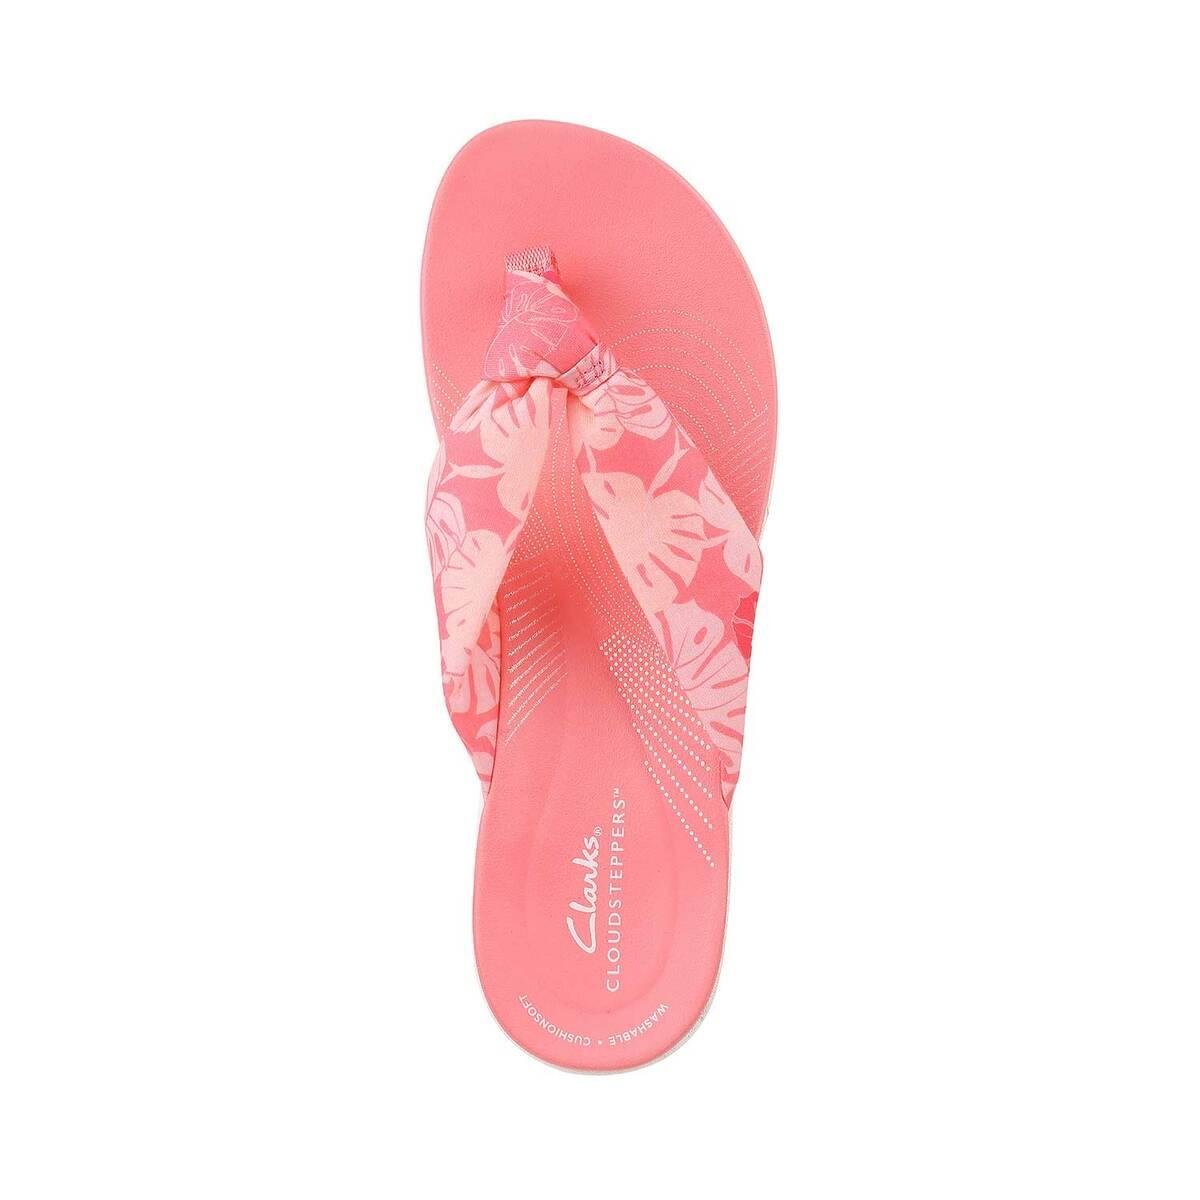 Clarks Merliah Echo Womens Tan Sandal Size 9.5 W | eBay